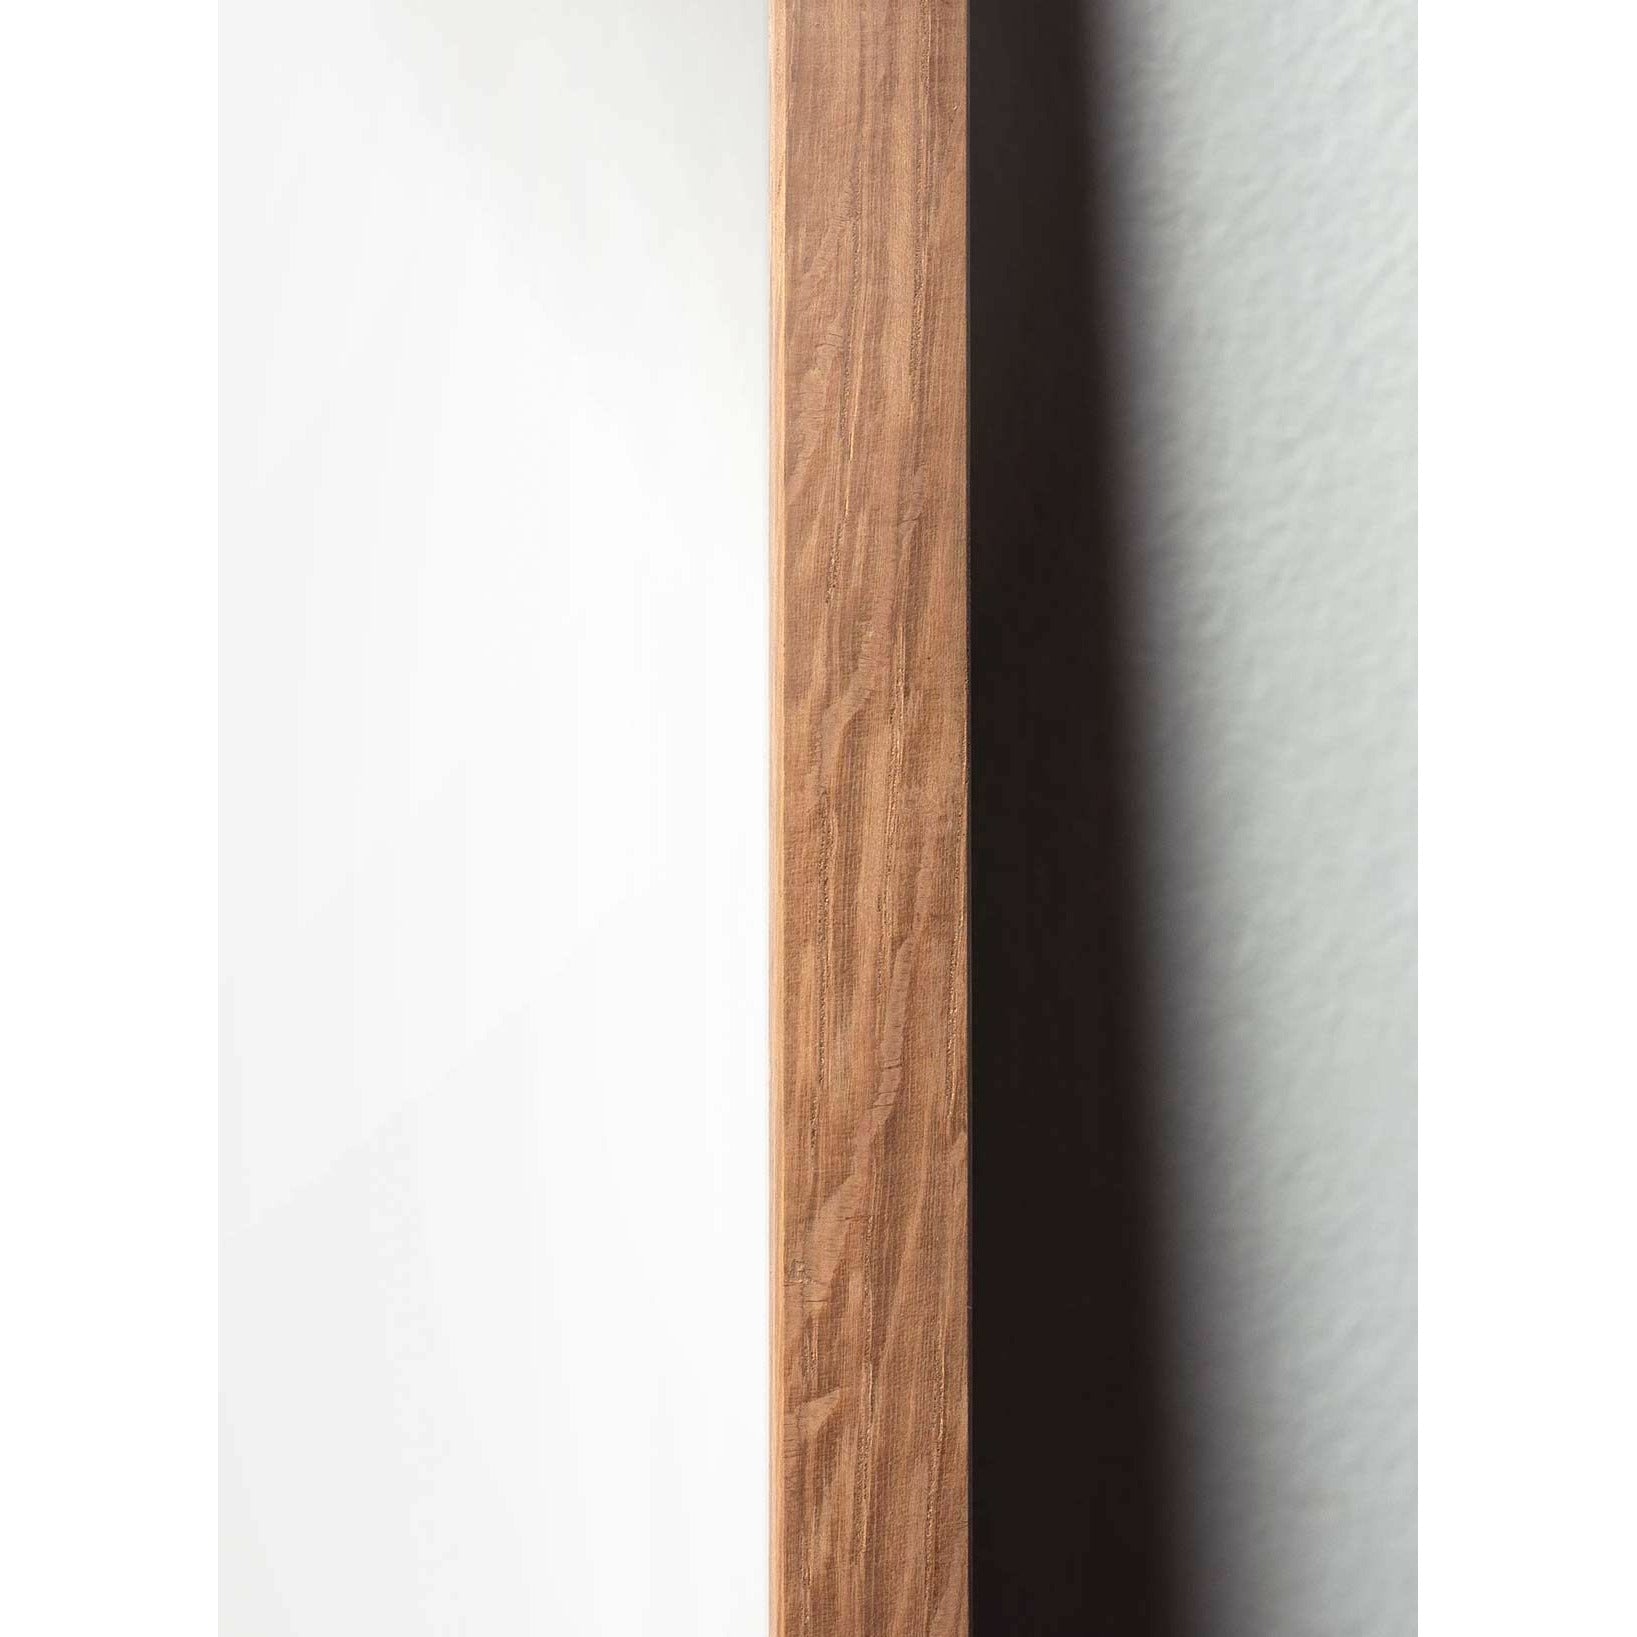 Brainchild Affiche de la ligne du cône de pin, cadre en bois clair 70x100 cm, fond blanc